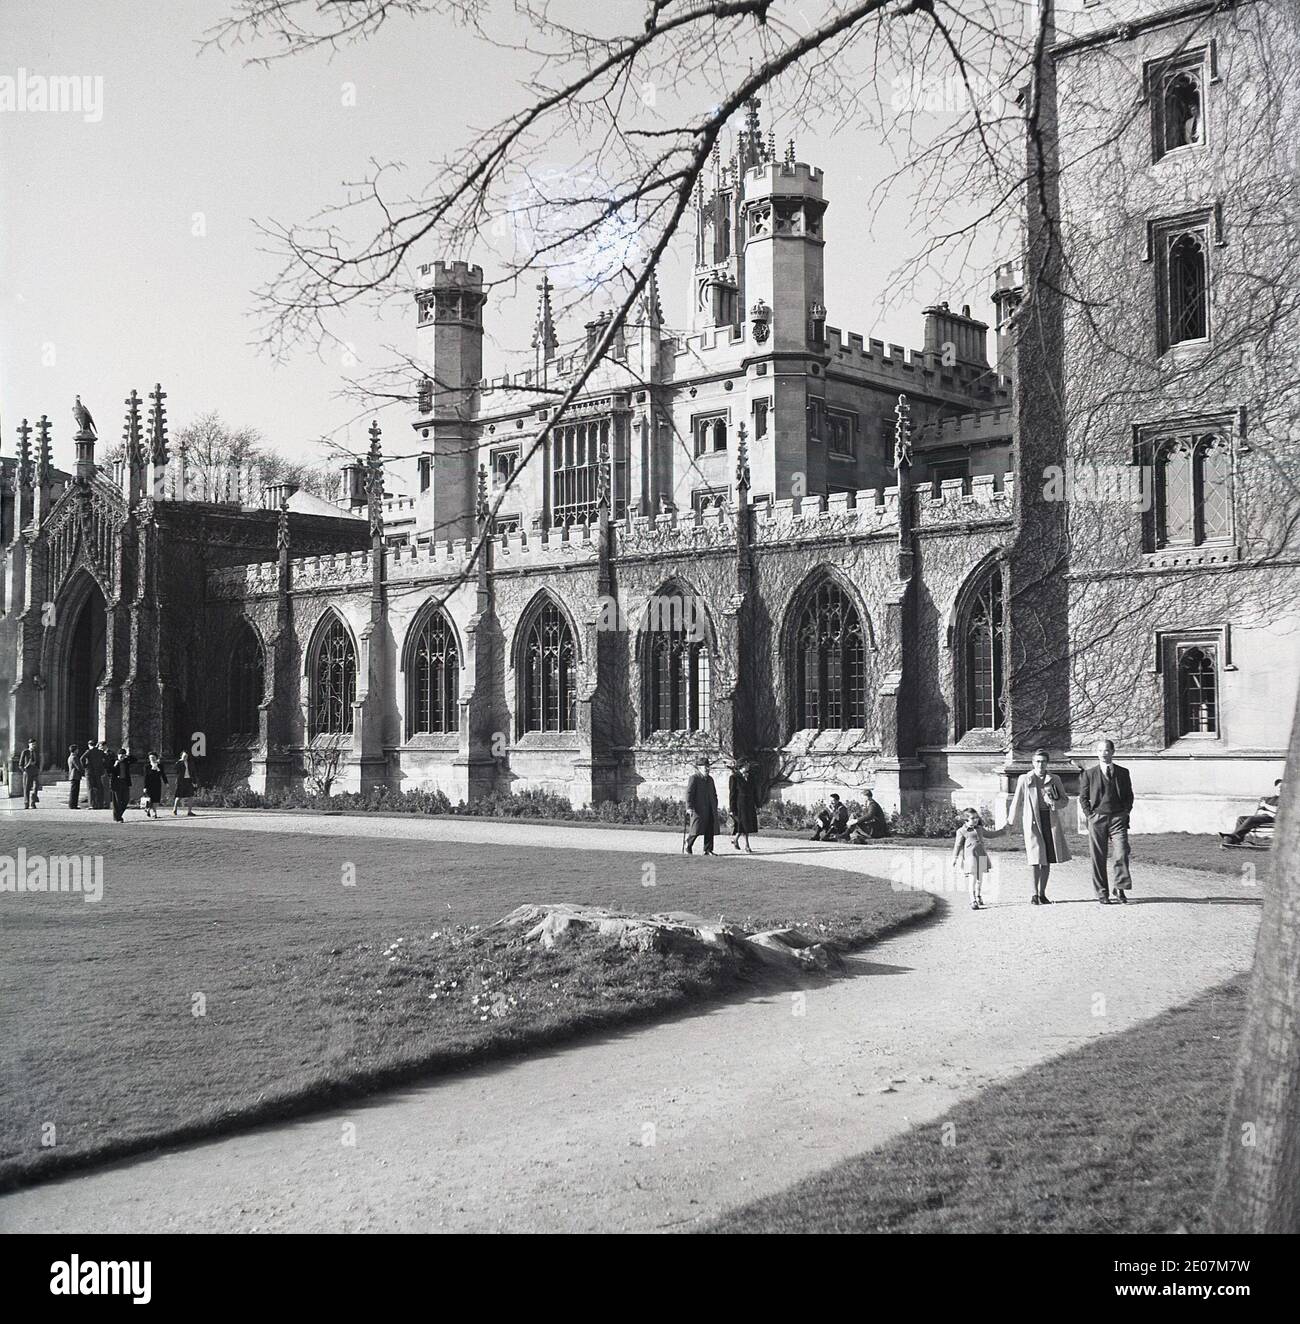 Anni '50, storico, nei terreni del college, le persone che camminano lungo un percorso accanto agli edifici eleganti e storici, alla Cambridge University, Cambridge, Inghilterra, Regno Unito. Foto Stock